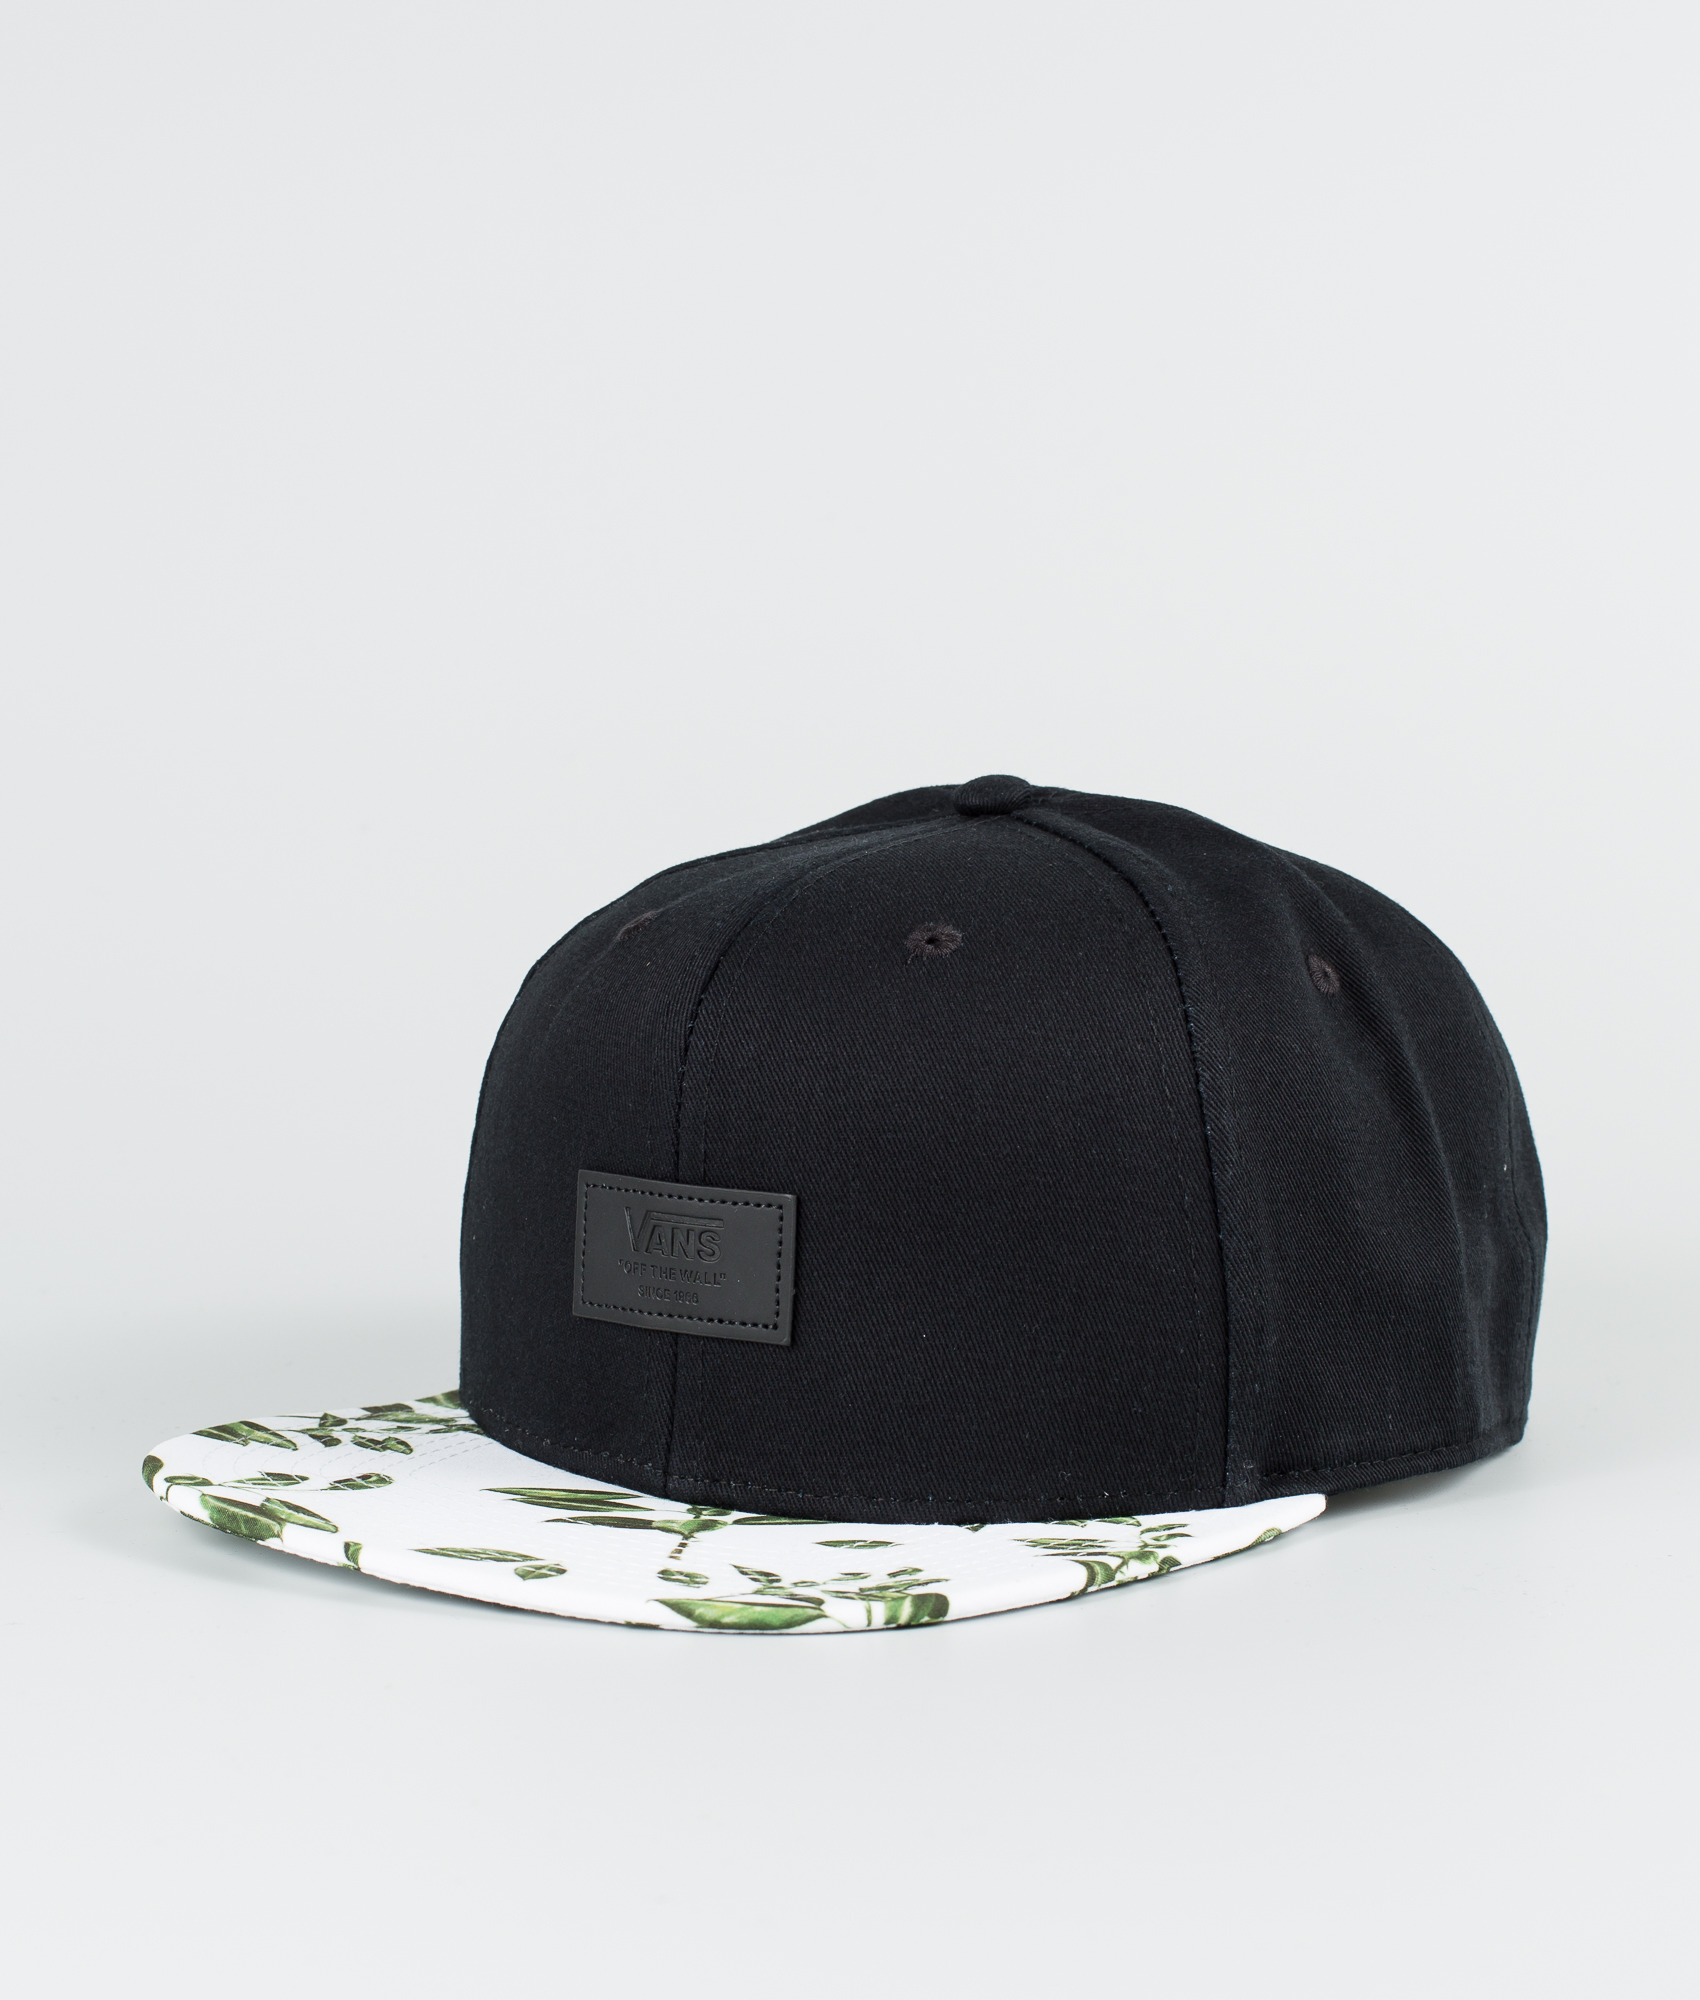 Cap Black/Rubber Co. Floral - Ridestore 